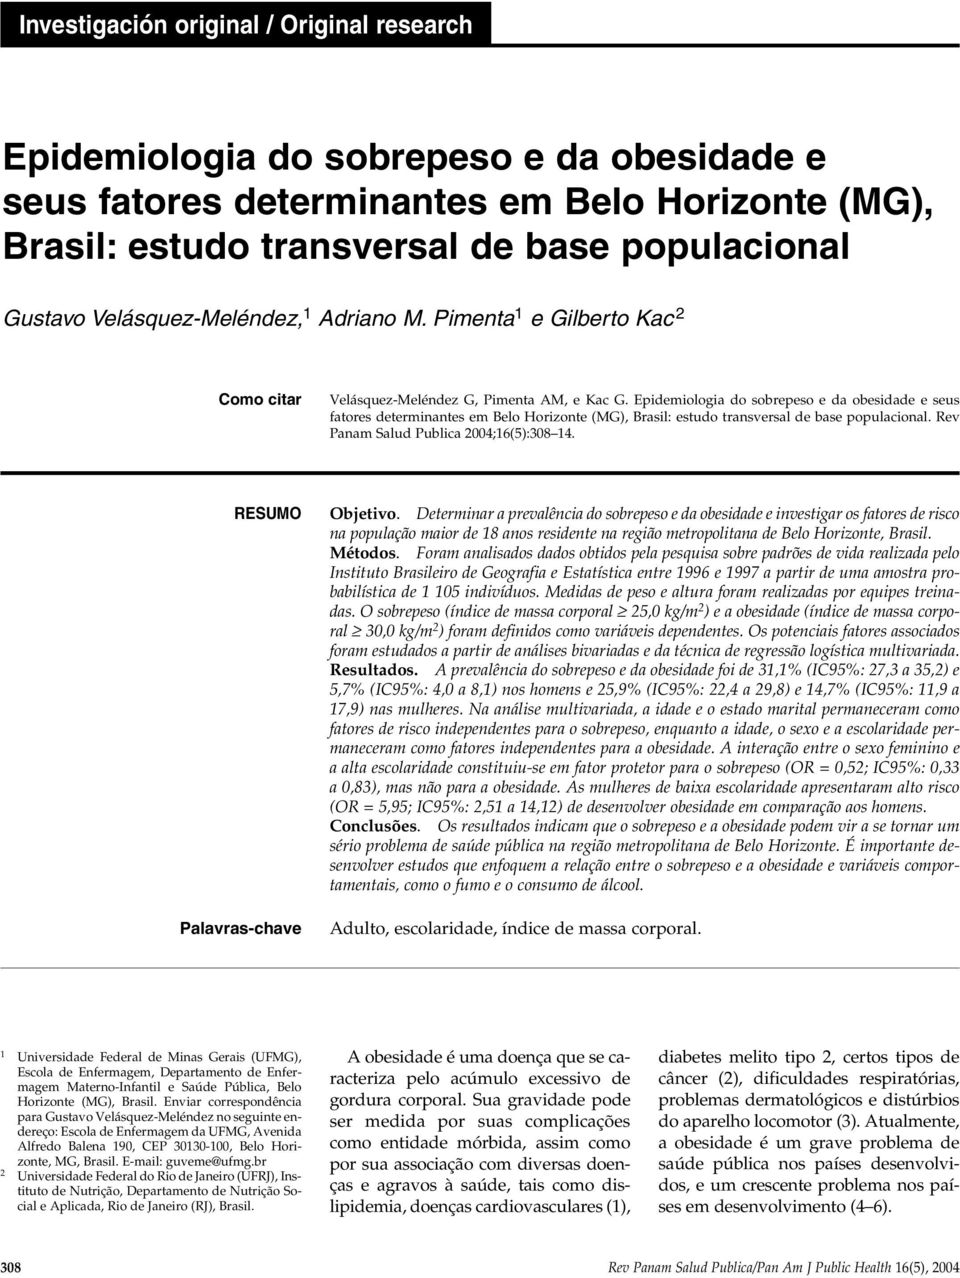 Epidemiologia do sobrepeso e da obesidade e seus fatores determinantes em Belo Horizonte (MG), Brasil: estudo transversal de base populacional. Rev Panam Salud Publica 2004;16(5):308 14.